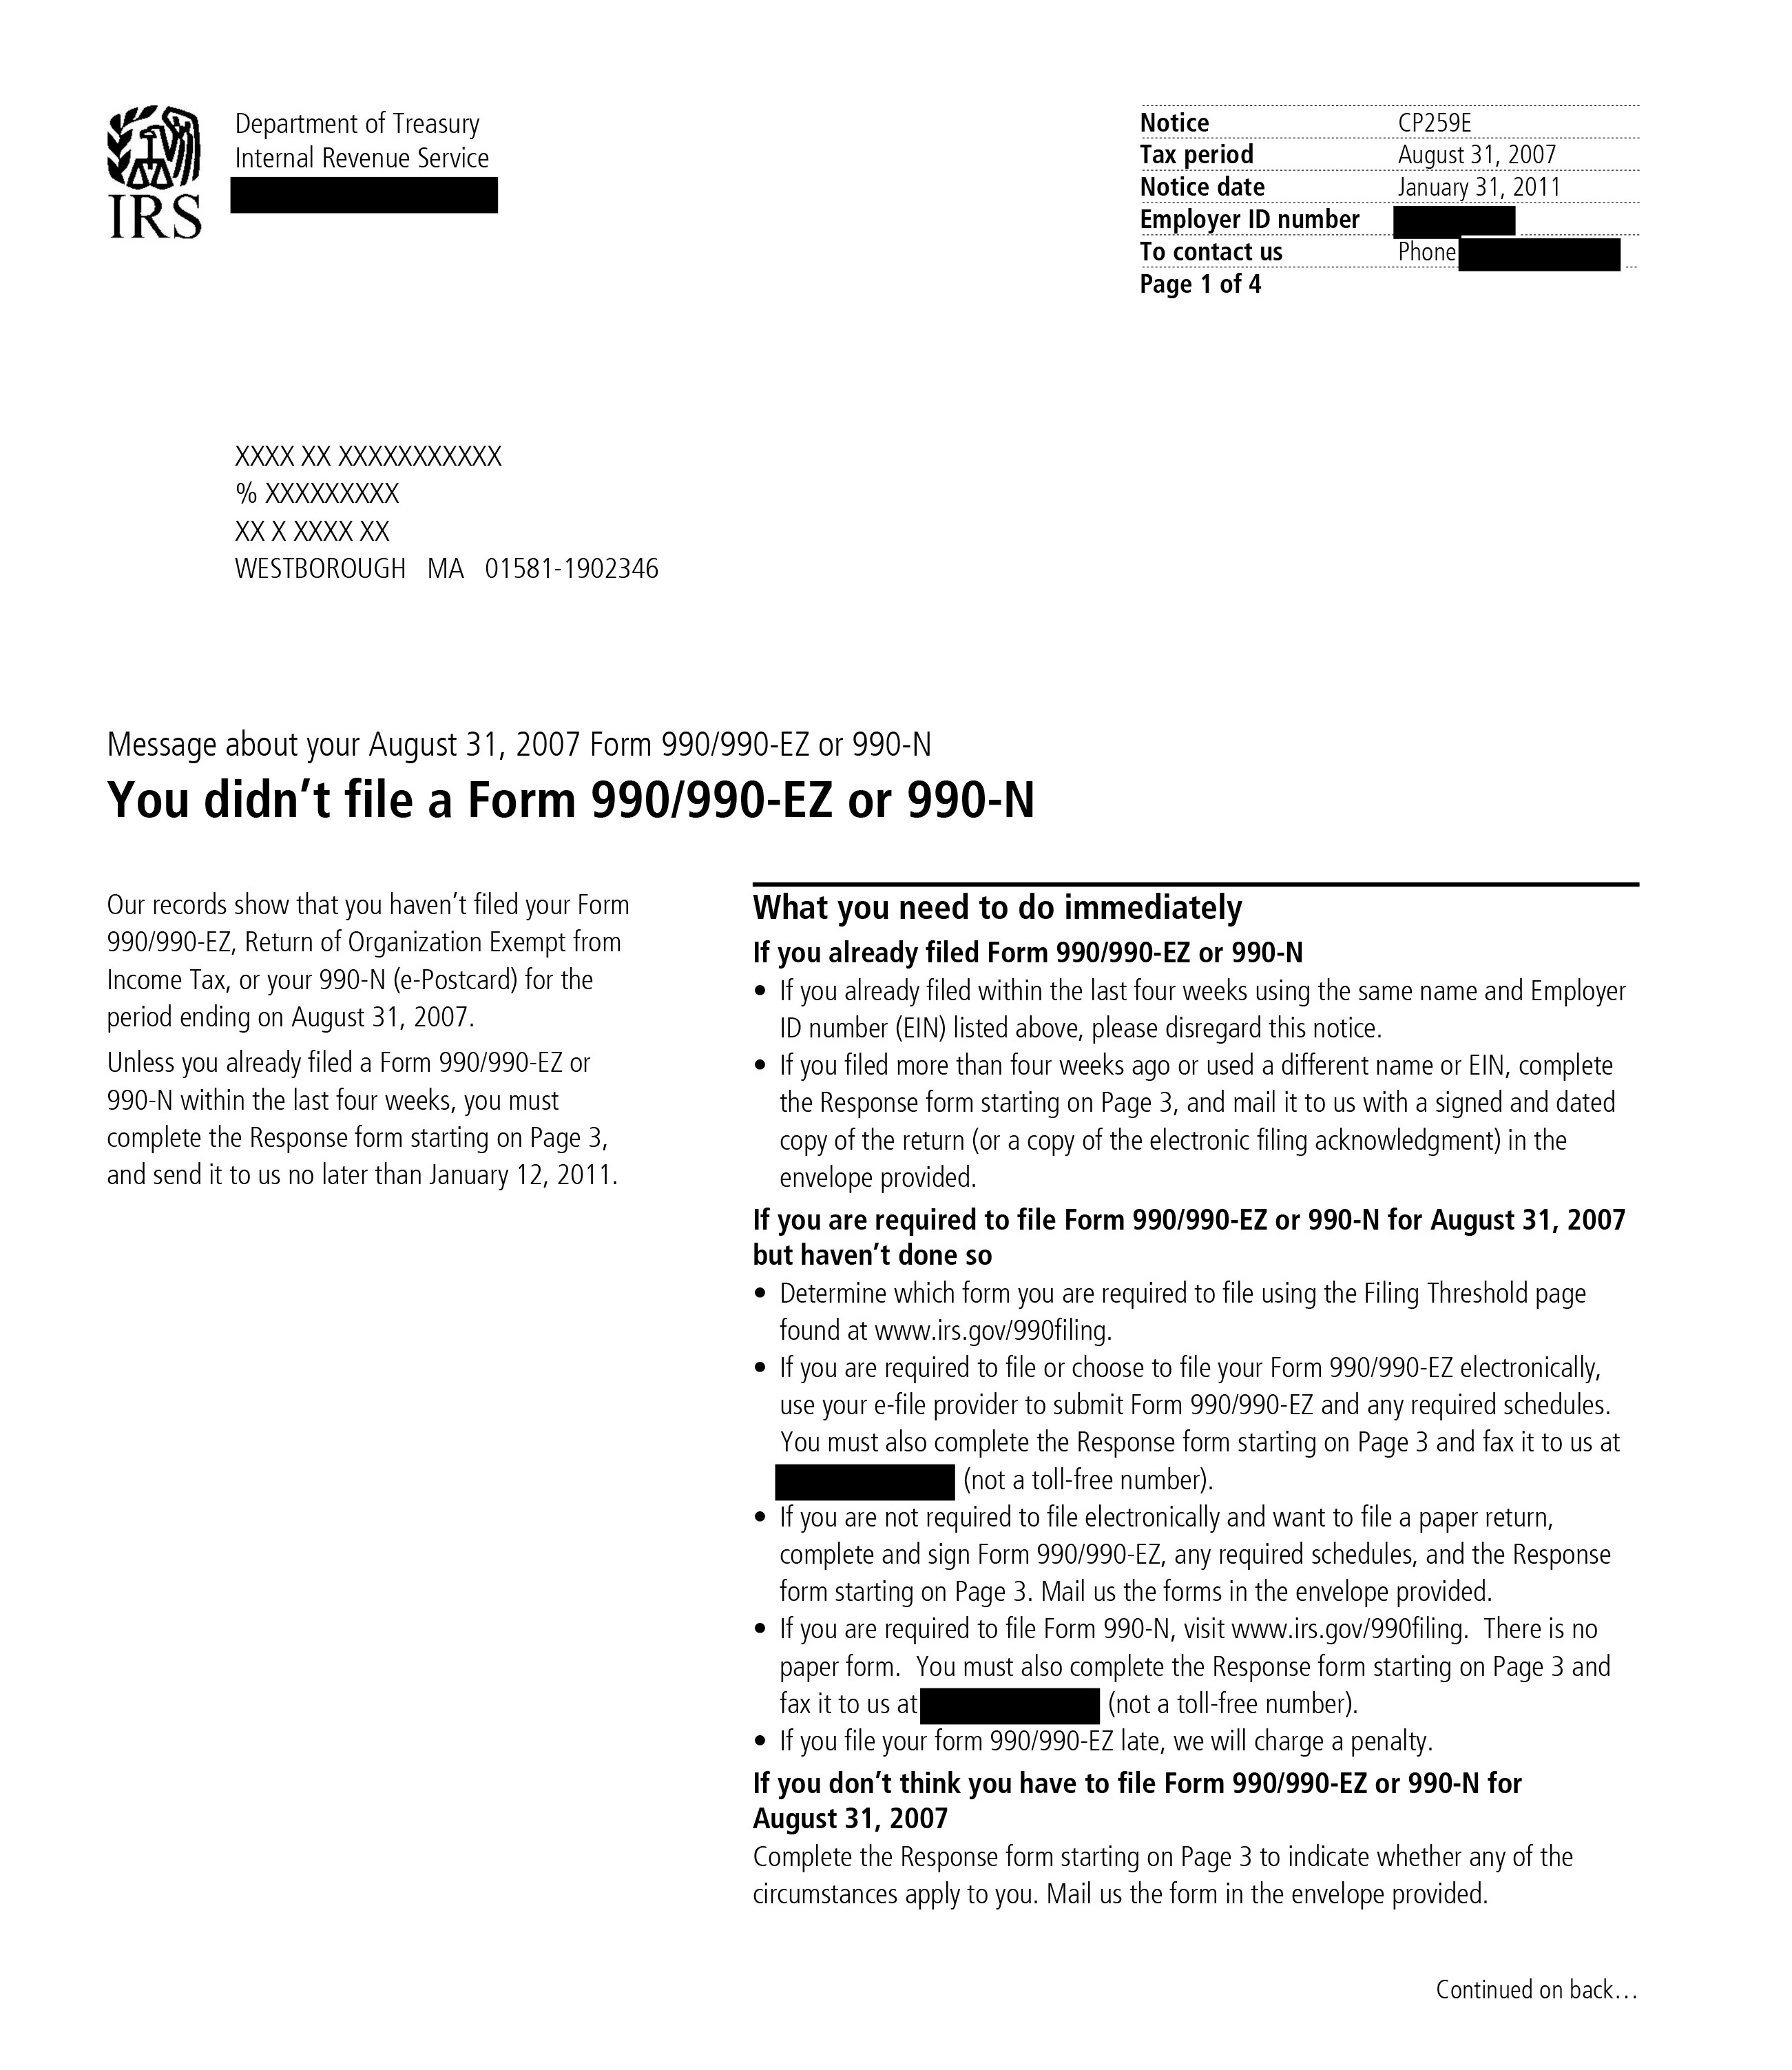 IRS-CP259E-Notice